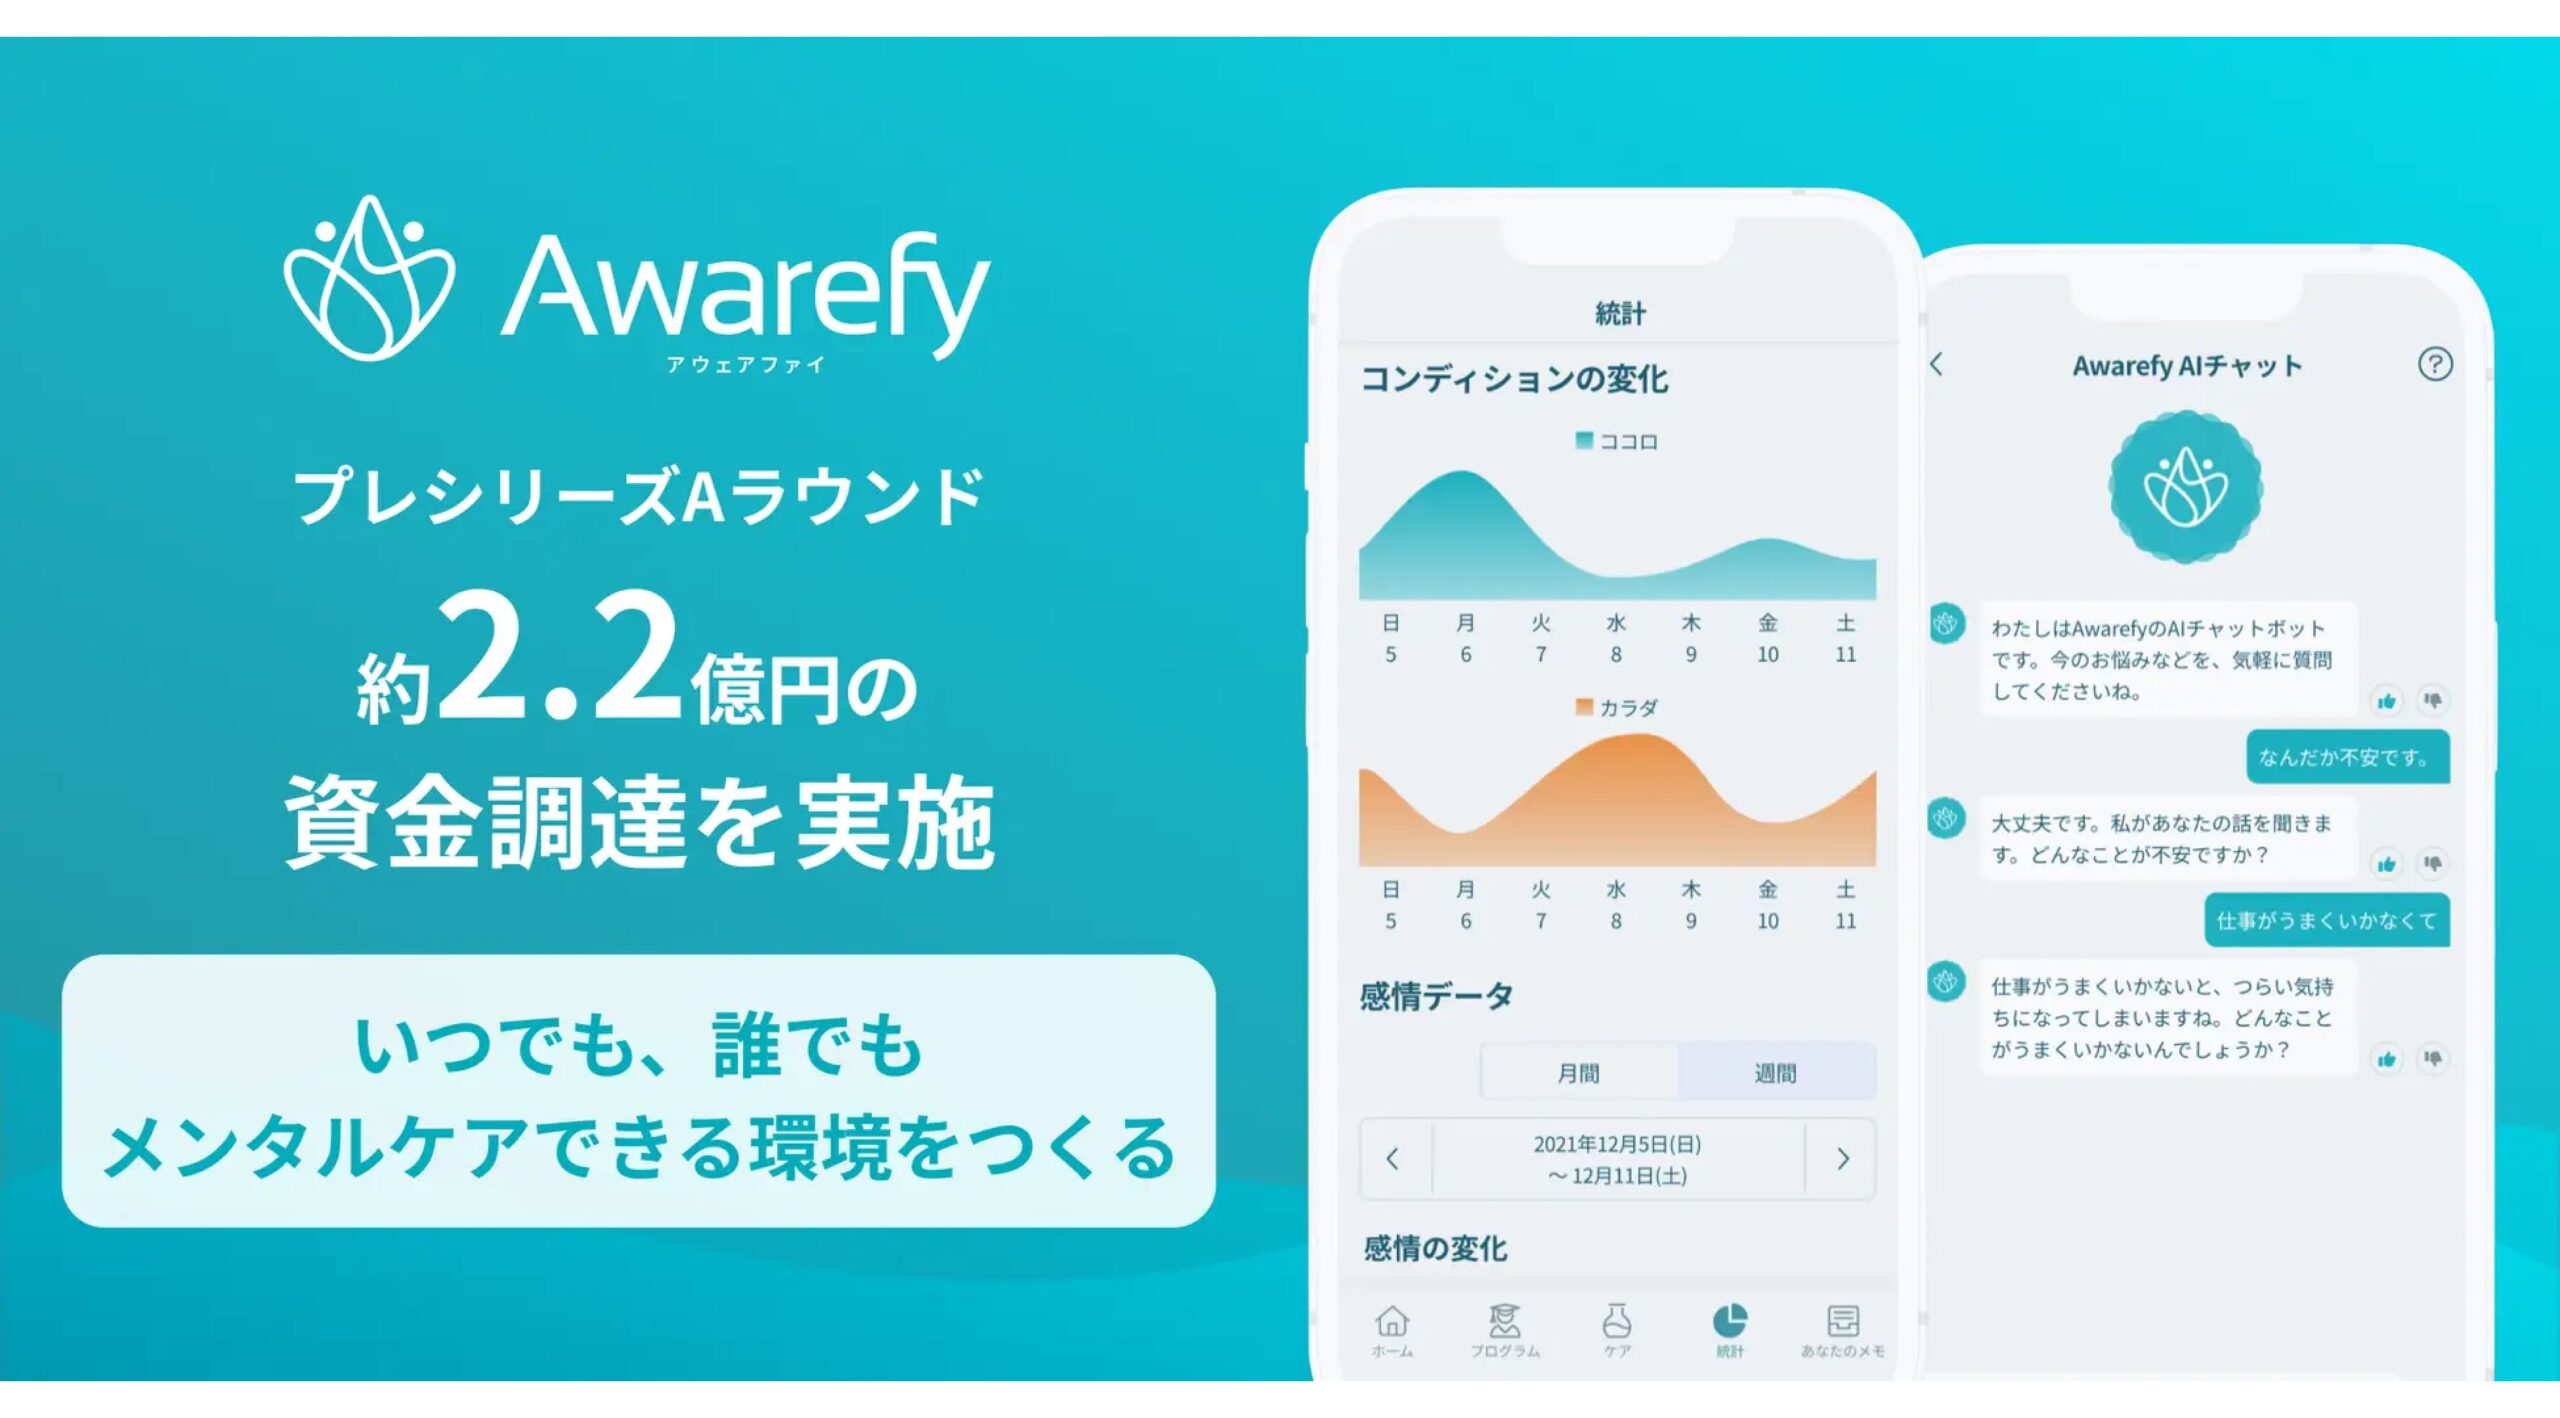 デジタル・メンタル・プラットフォーム運営「Awarefy」、約2.2億円調達しAI活用を強化